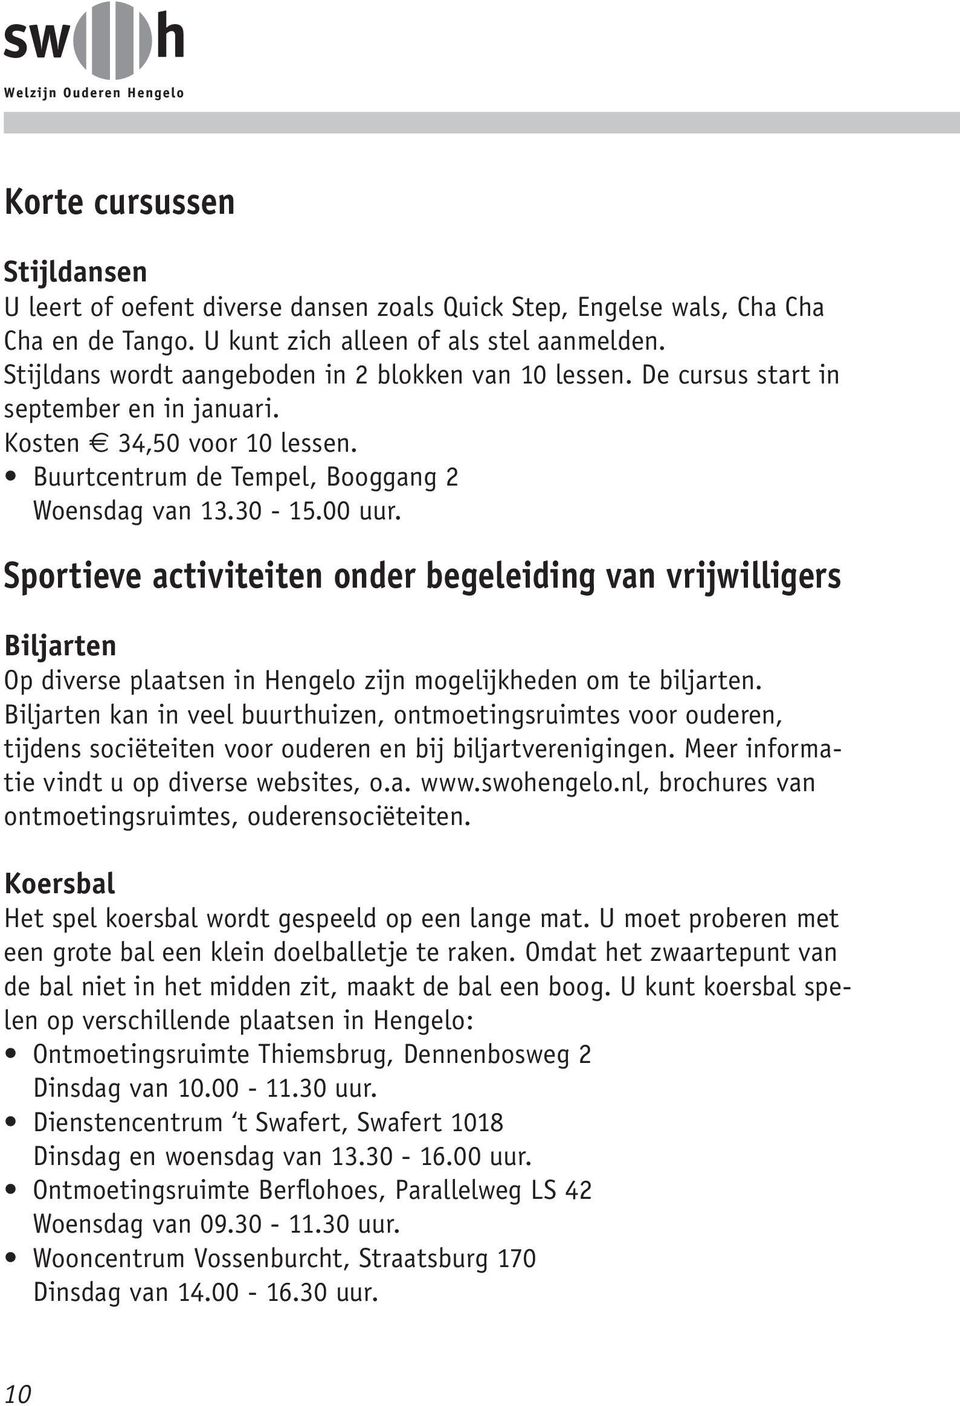 Sportieve activiteiten onder begeleiding van vrijwilligers Biljarten Op diverse plaatsen in Hengelo zijn mogelijkheden om te biljarten.